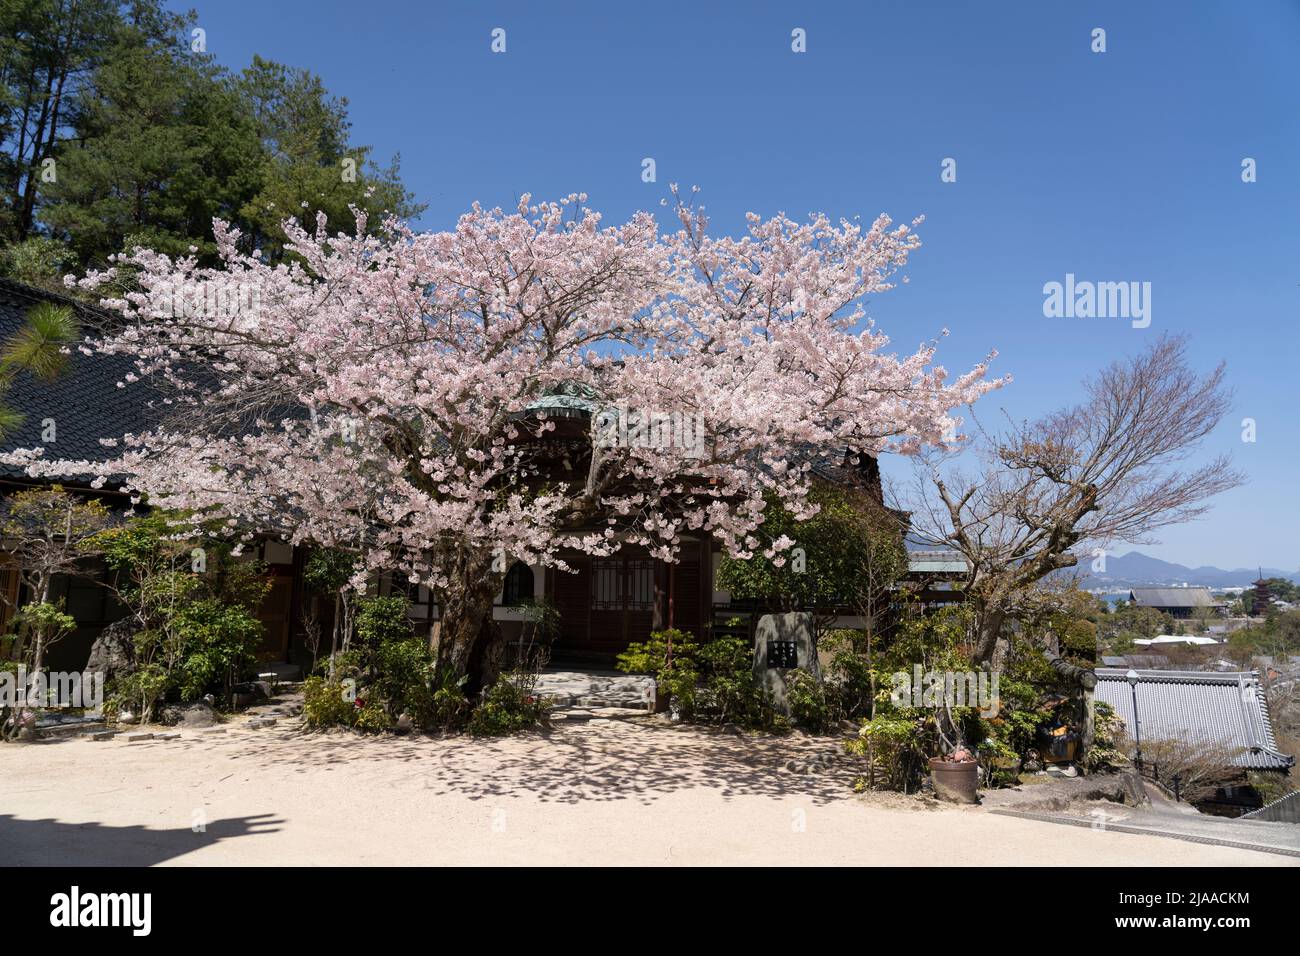 Floraison de cerisiers au temple bouddhiste de Daishoin 大聖院, île Miyajima alias Itsukushima, baie d'Hiroshima, Honshu occidental, Japon Banque D'Images